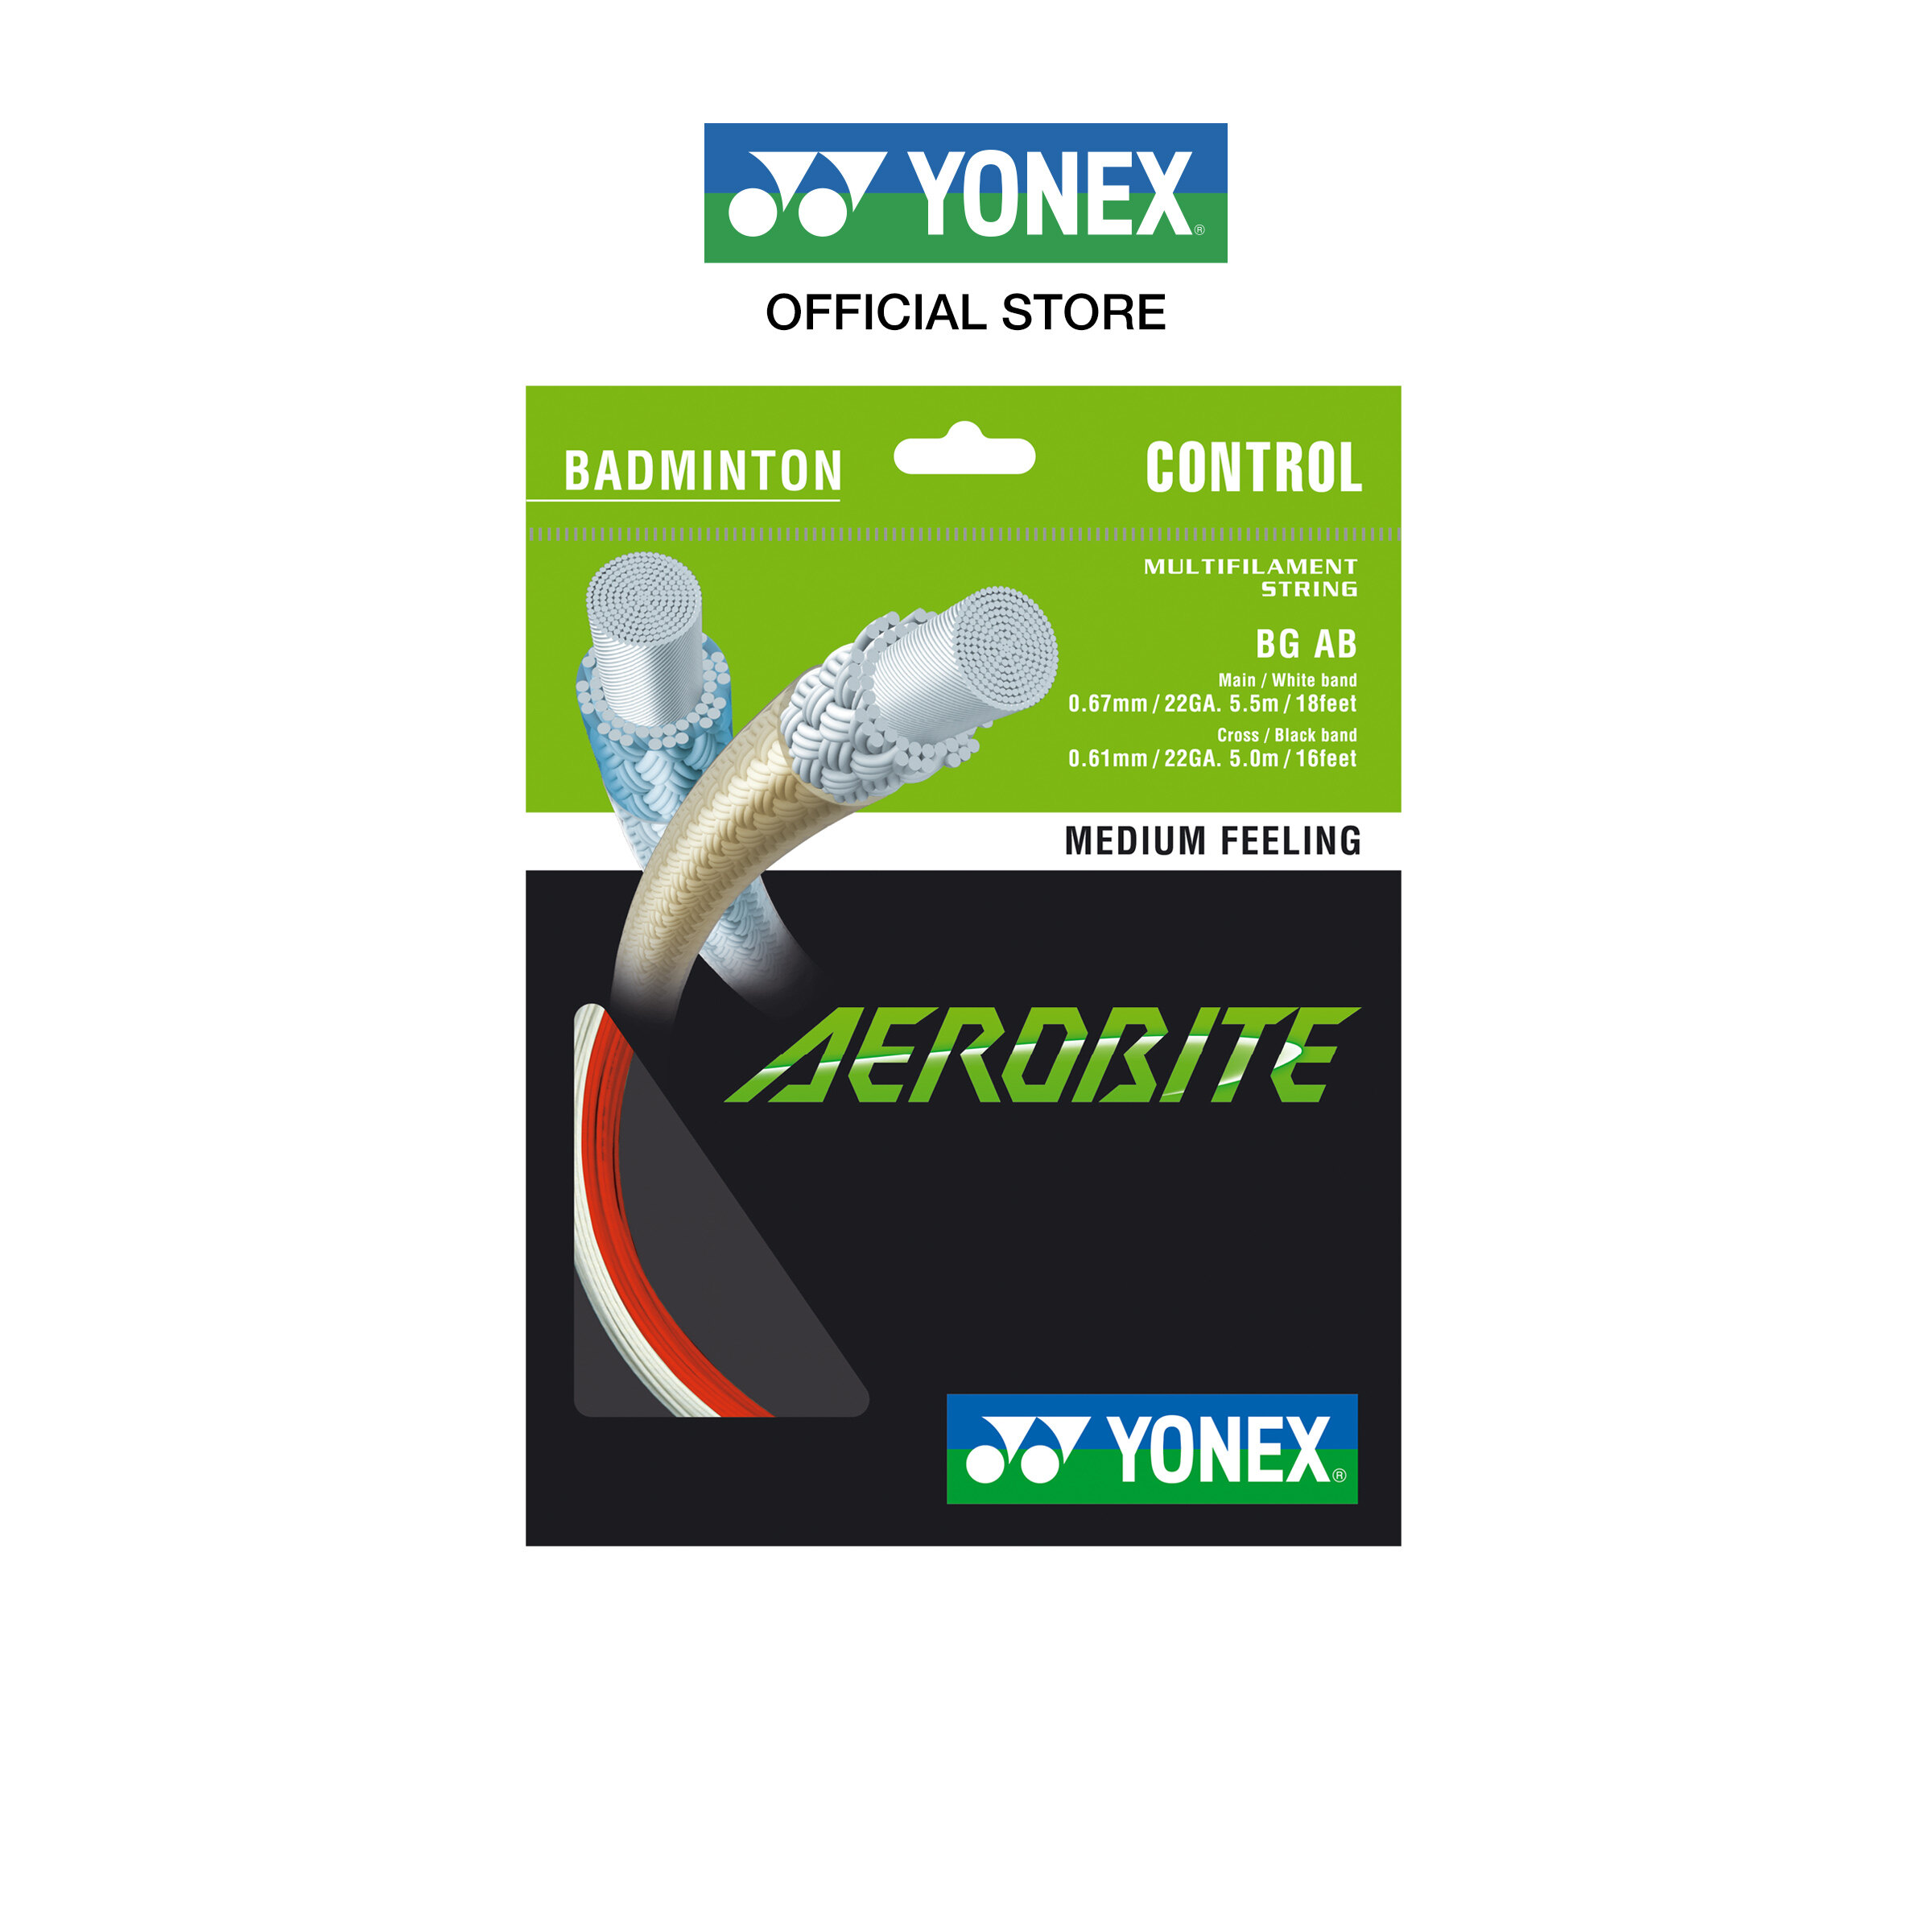 YONEX รุ่น AEROBITE เอ็นแบดมินตัน เอ็นไฮบริด ช่วยให้เพิ่มแรงหมุนของลูกขนไก่ในการตบที่ตบขึ้นและการเล่นลูกหยอด